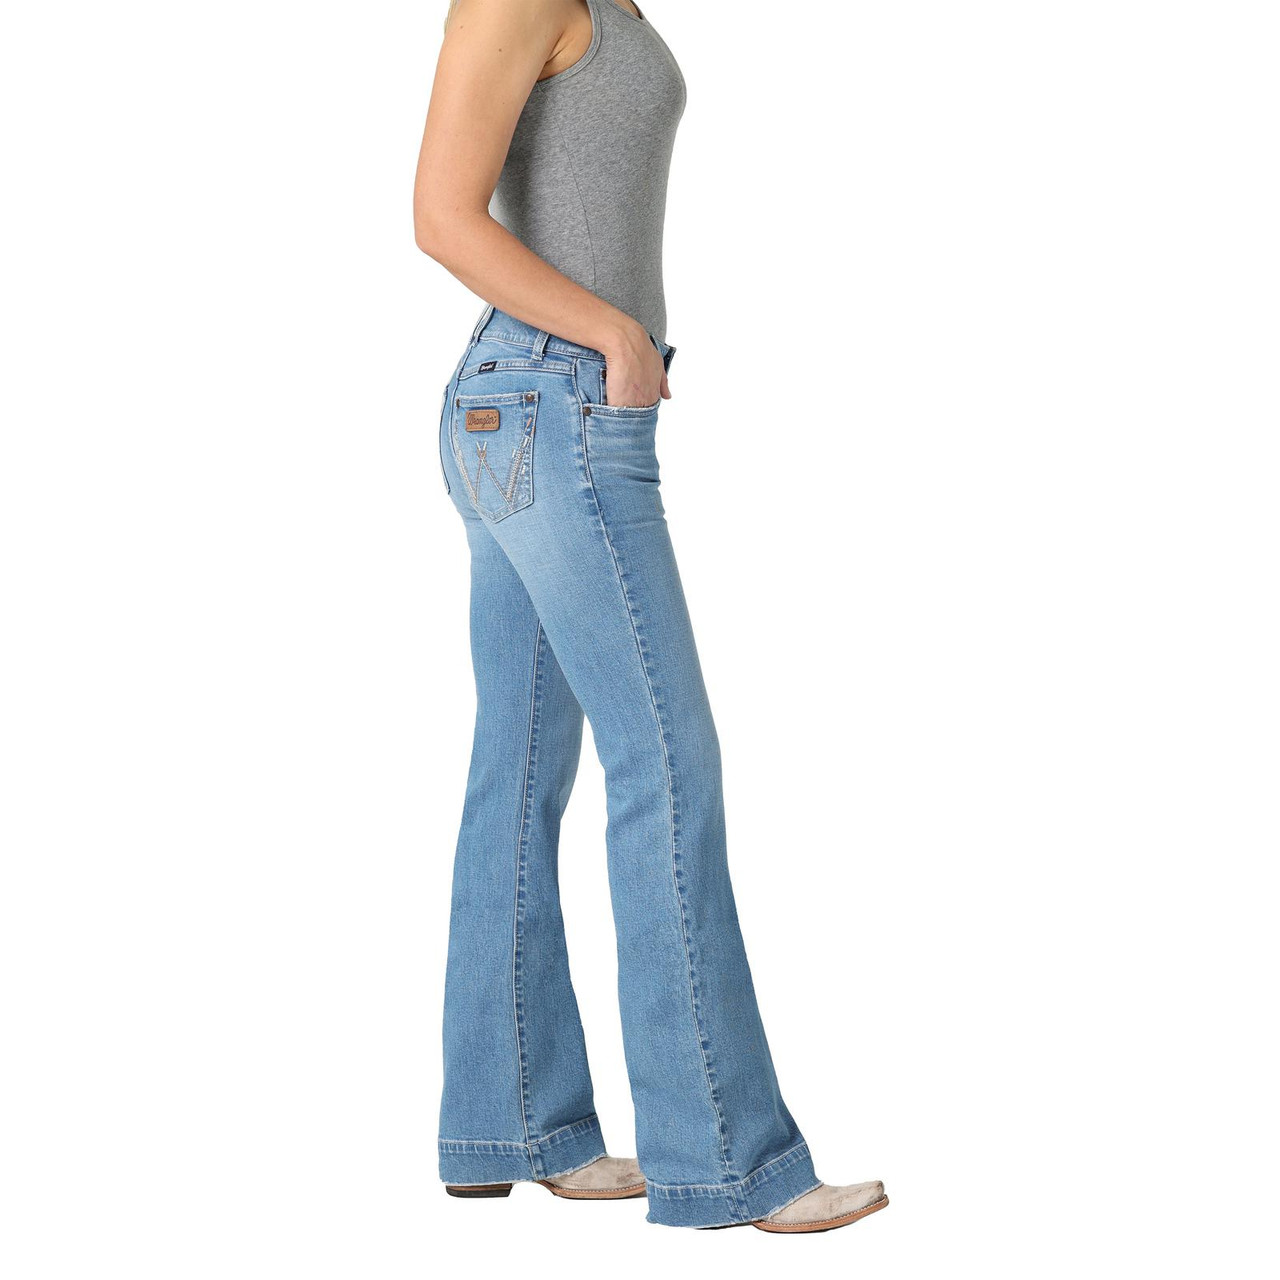 Women's Wrangler Midrise Denim Jeans (Light Blue)